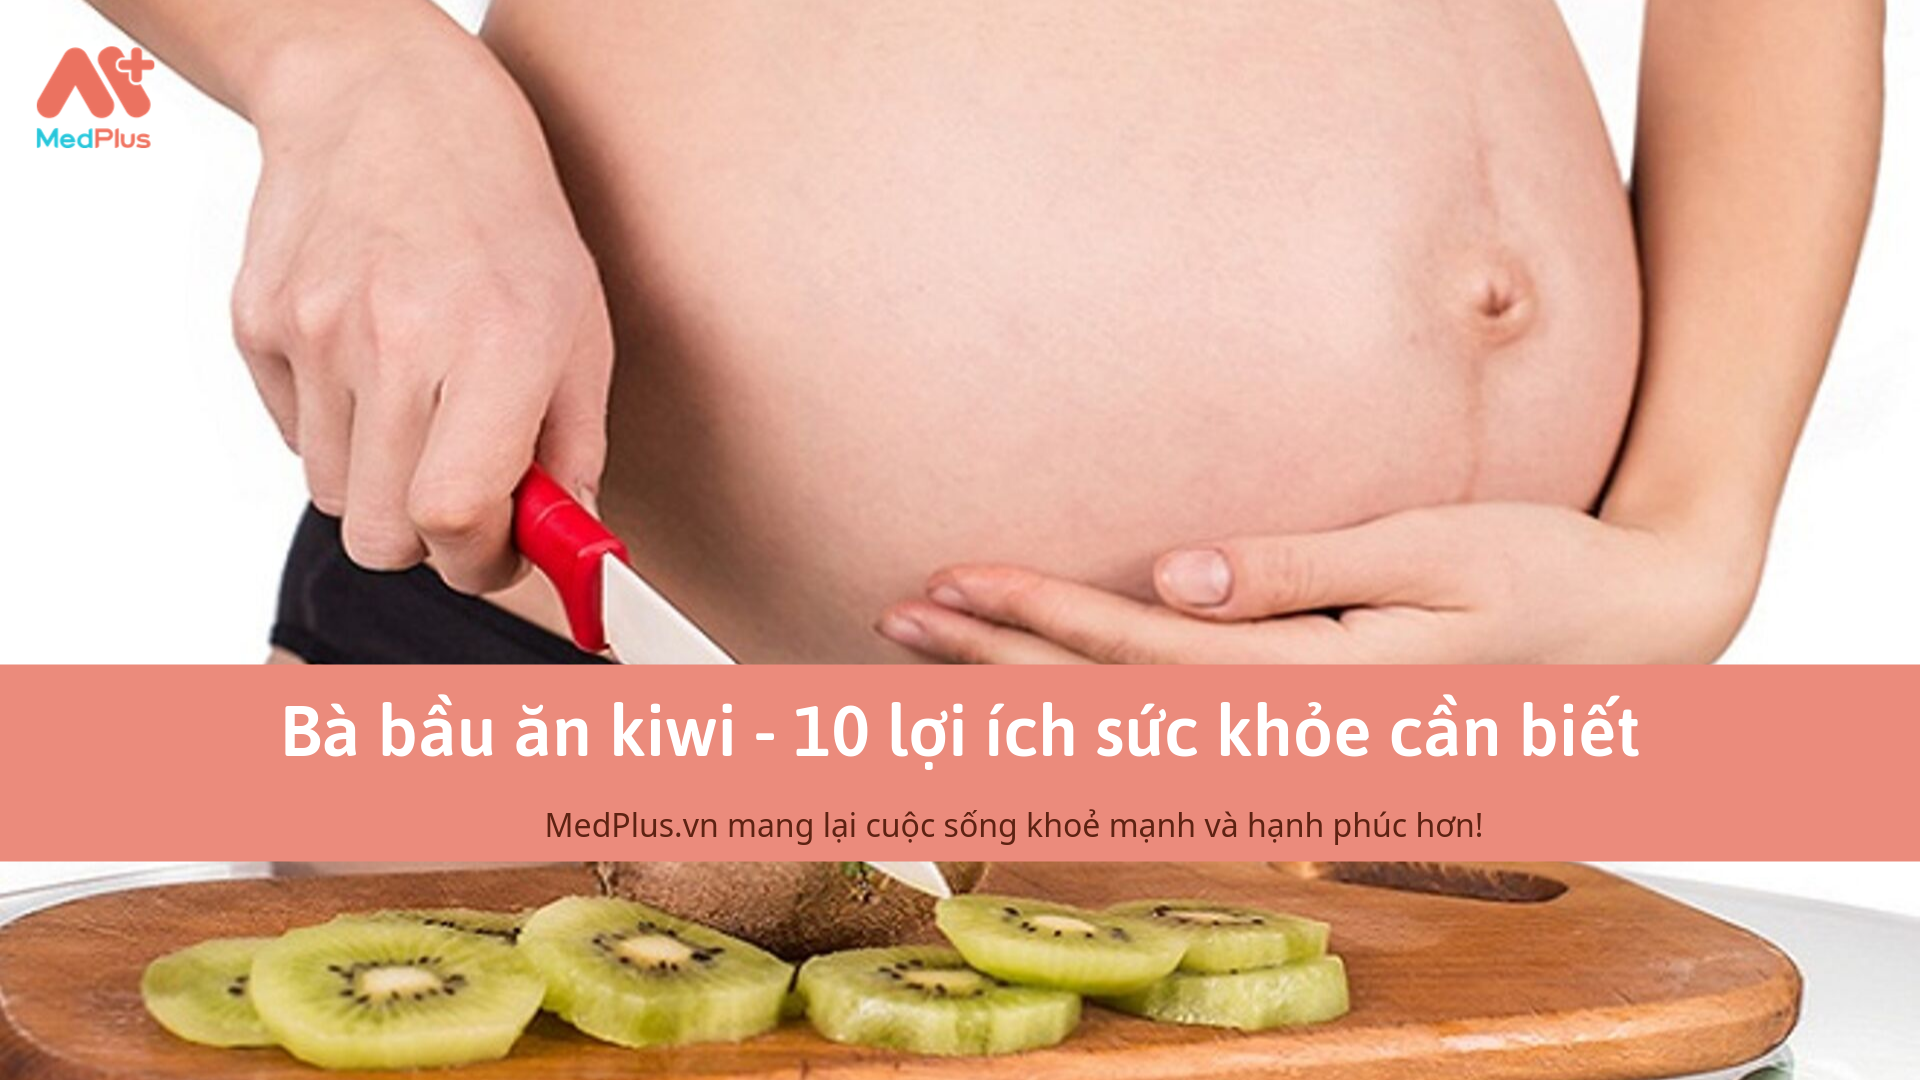 Bà bầu ăn kiwi - 10 lợi ích sức khỏe cần biết - Medplus.vn